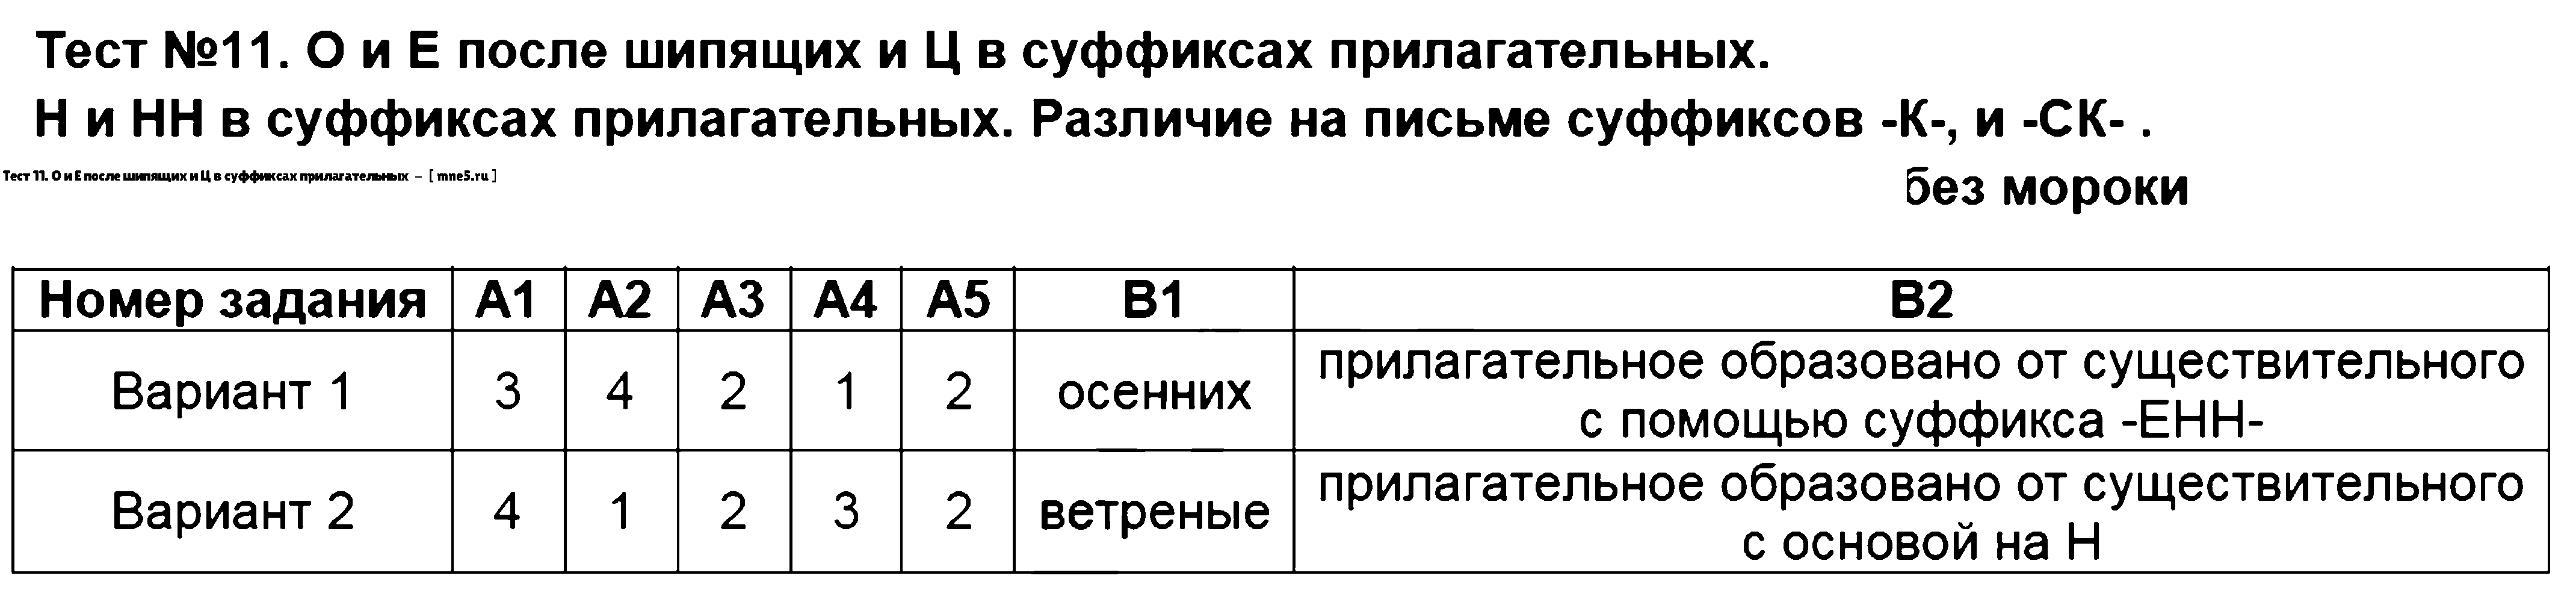 ГДЗ Русский язык 6 класс - Тест 11. О и Е после шипящих и Ц в суффиксах прилагательных